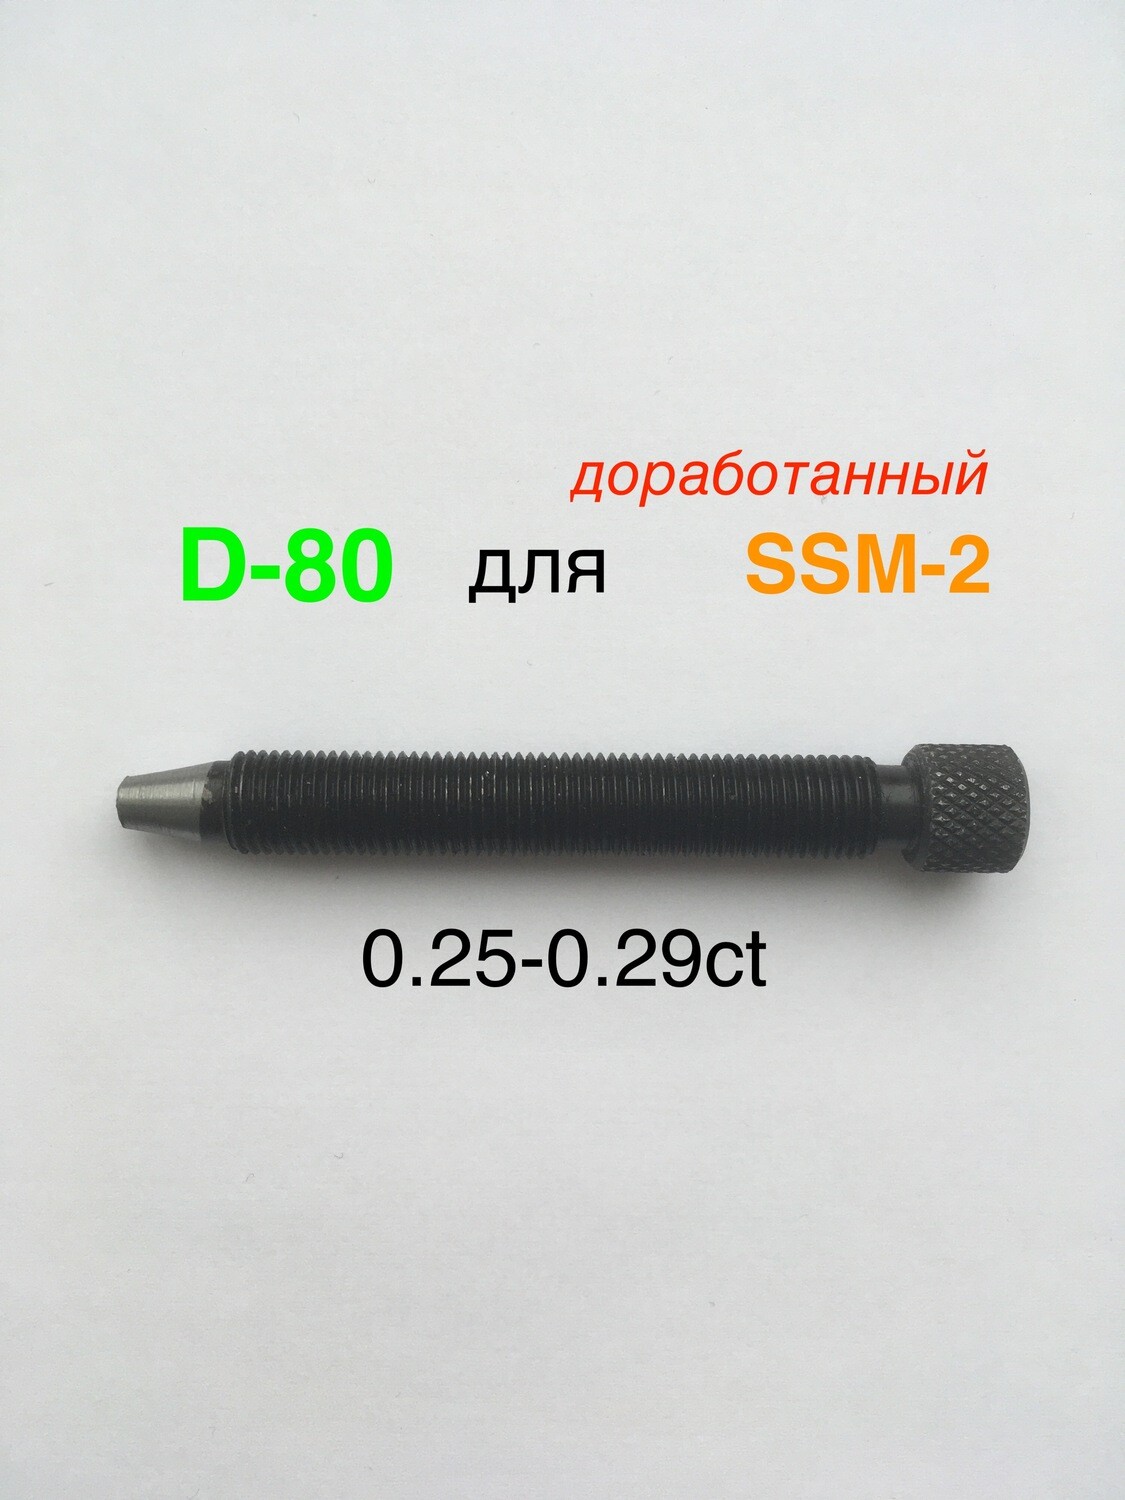 Алмаз D-80 для SSM-2/RedMachine | шип 0,25-0,29ct доработанный